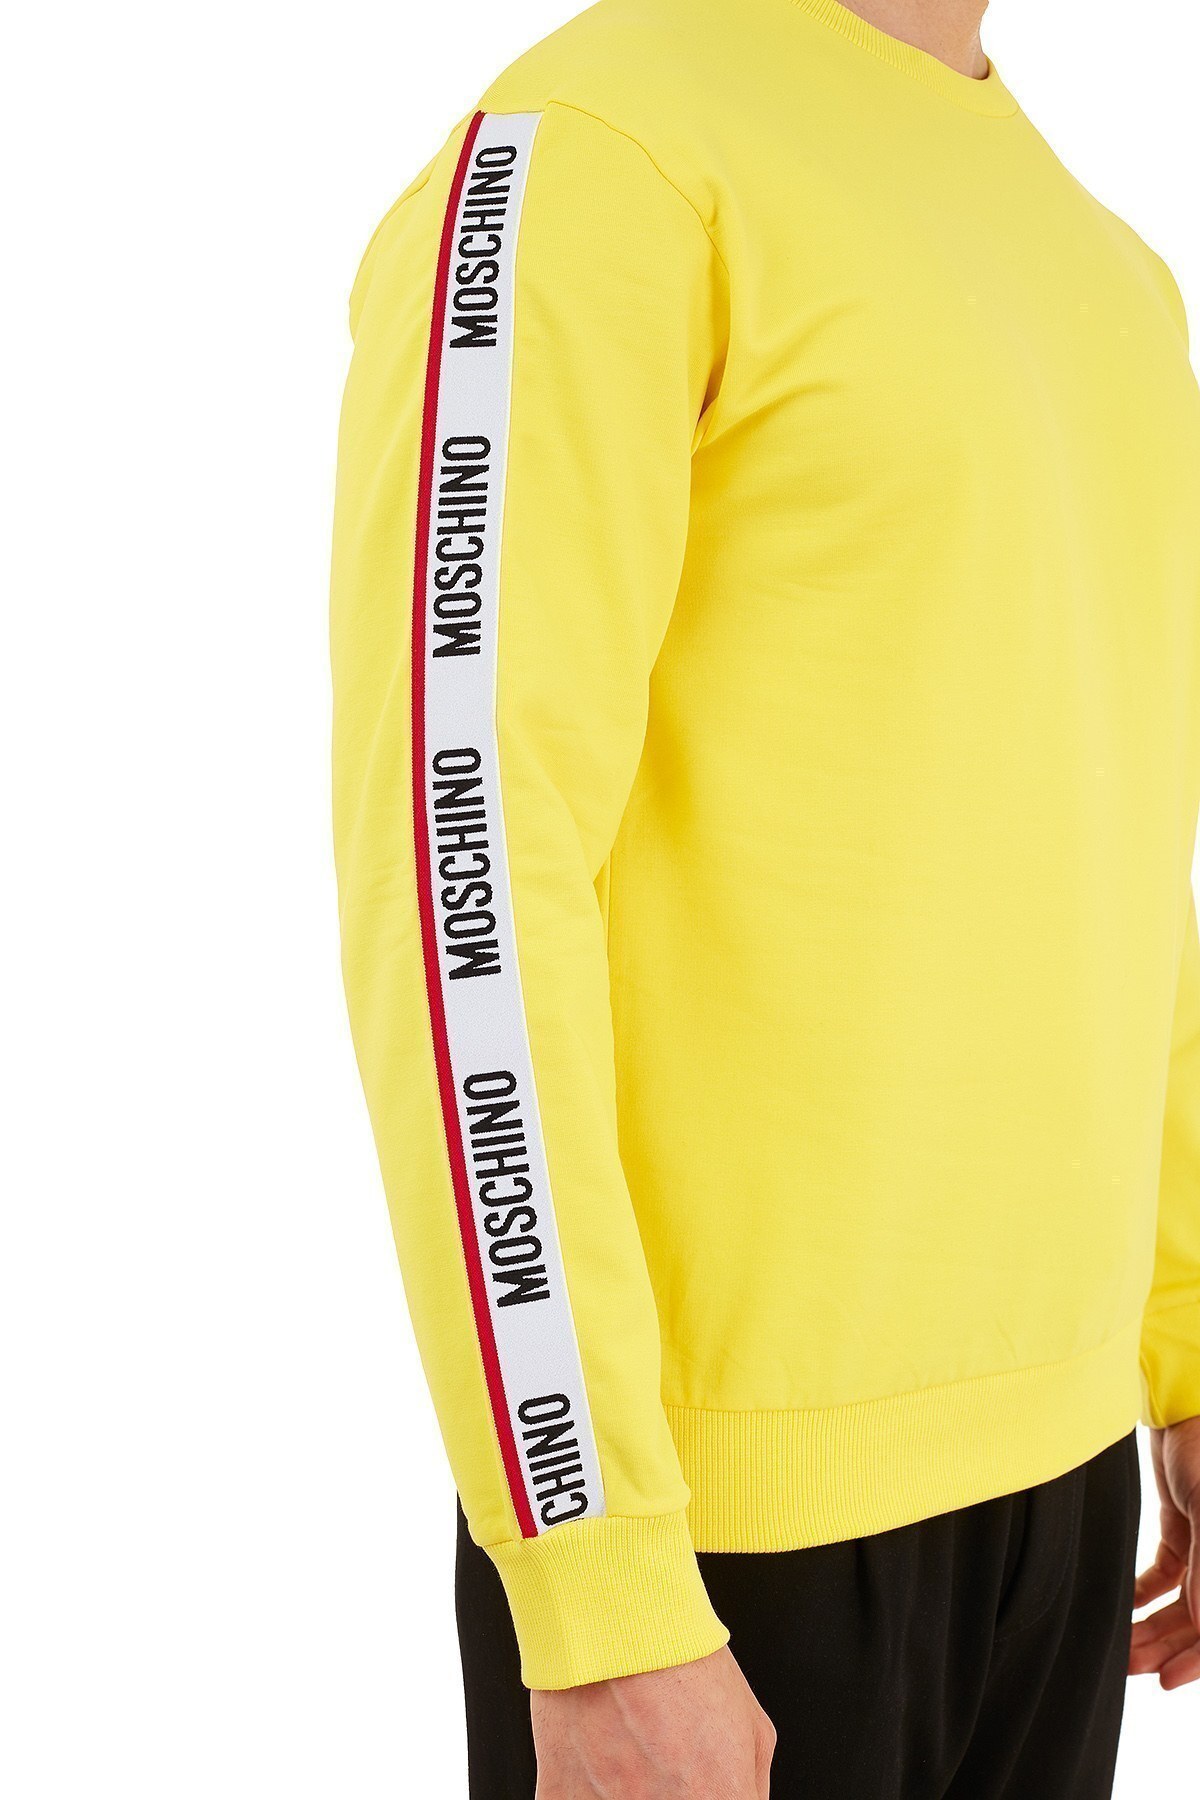 Moschino Regular Fit Logo Bantlı Bisiklet Yaka Pamuklu Erkek Sweat A1706 8106 0026 SARI